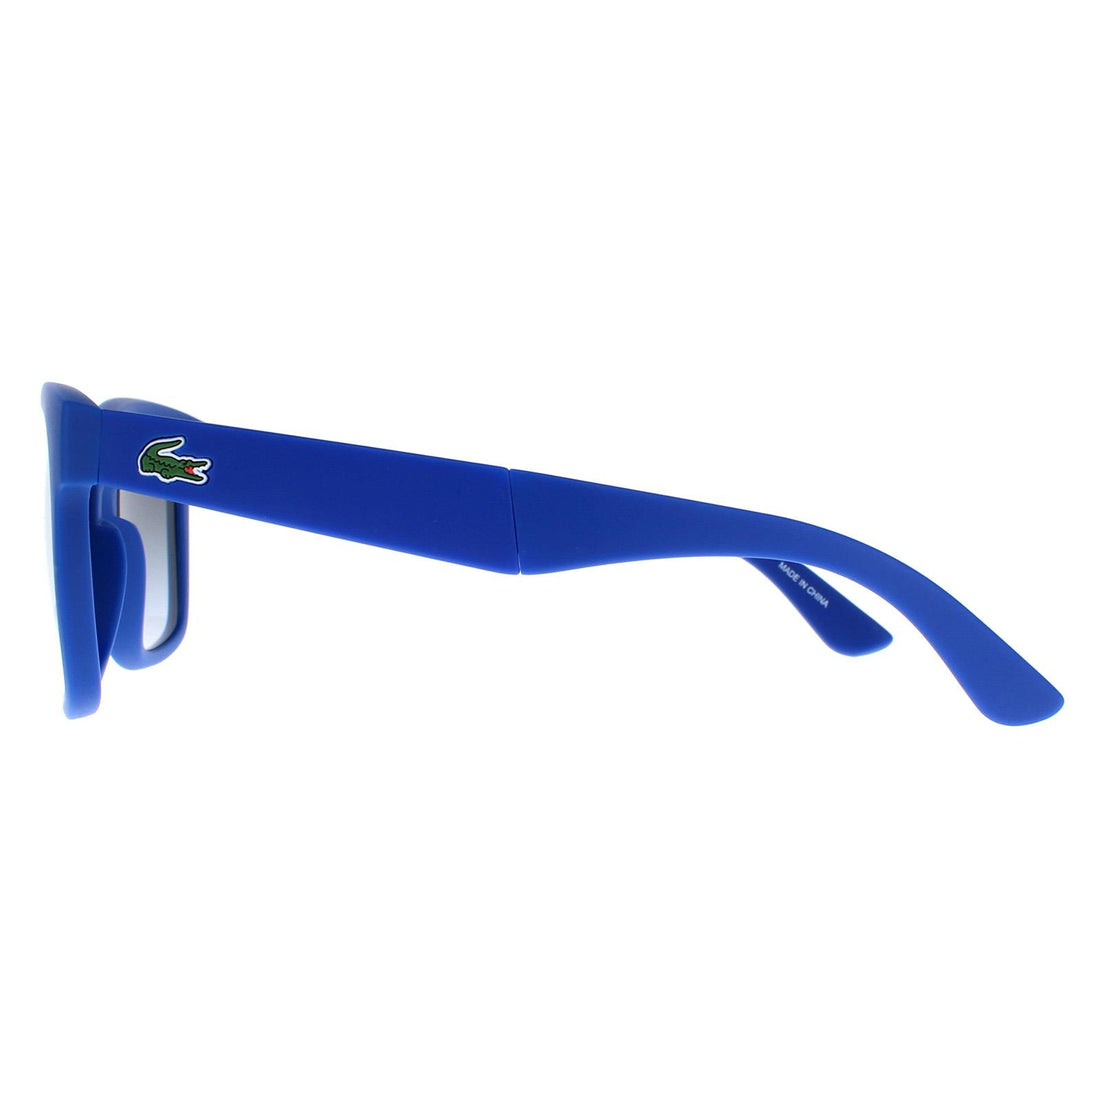 Lacoste L778S Sunglasses